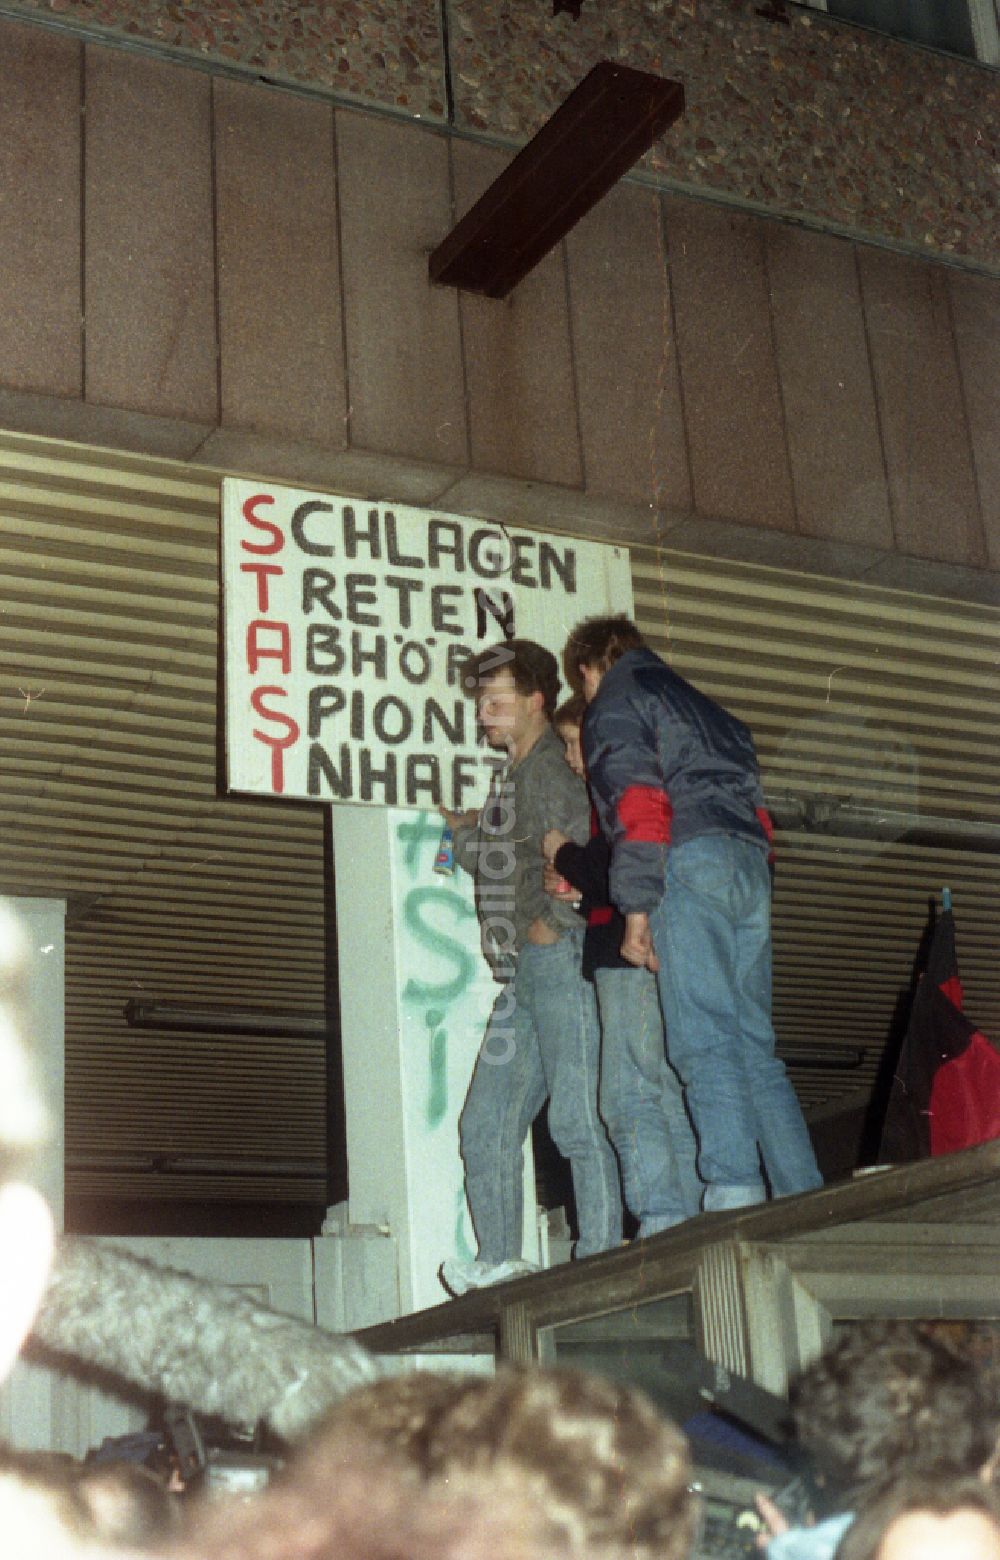 Berlin: Besetzung der MfS - Zentrale Ministerium für Staatssicherheit in der Normannenstraße in Berlin auf dem Gebiet der ehemaligen DDR, Deutsche Demokratische Republik